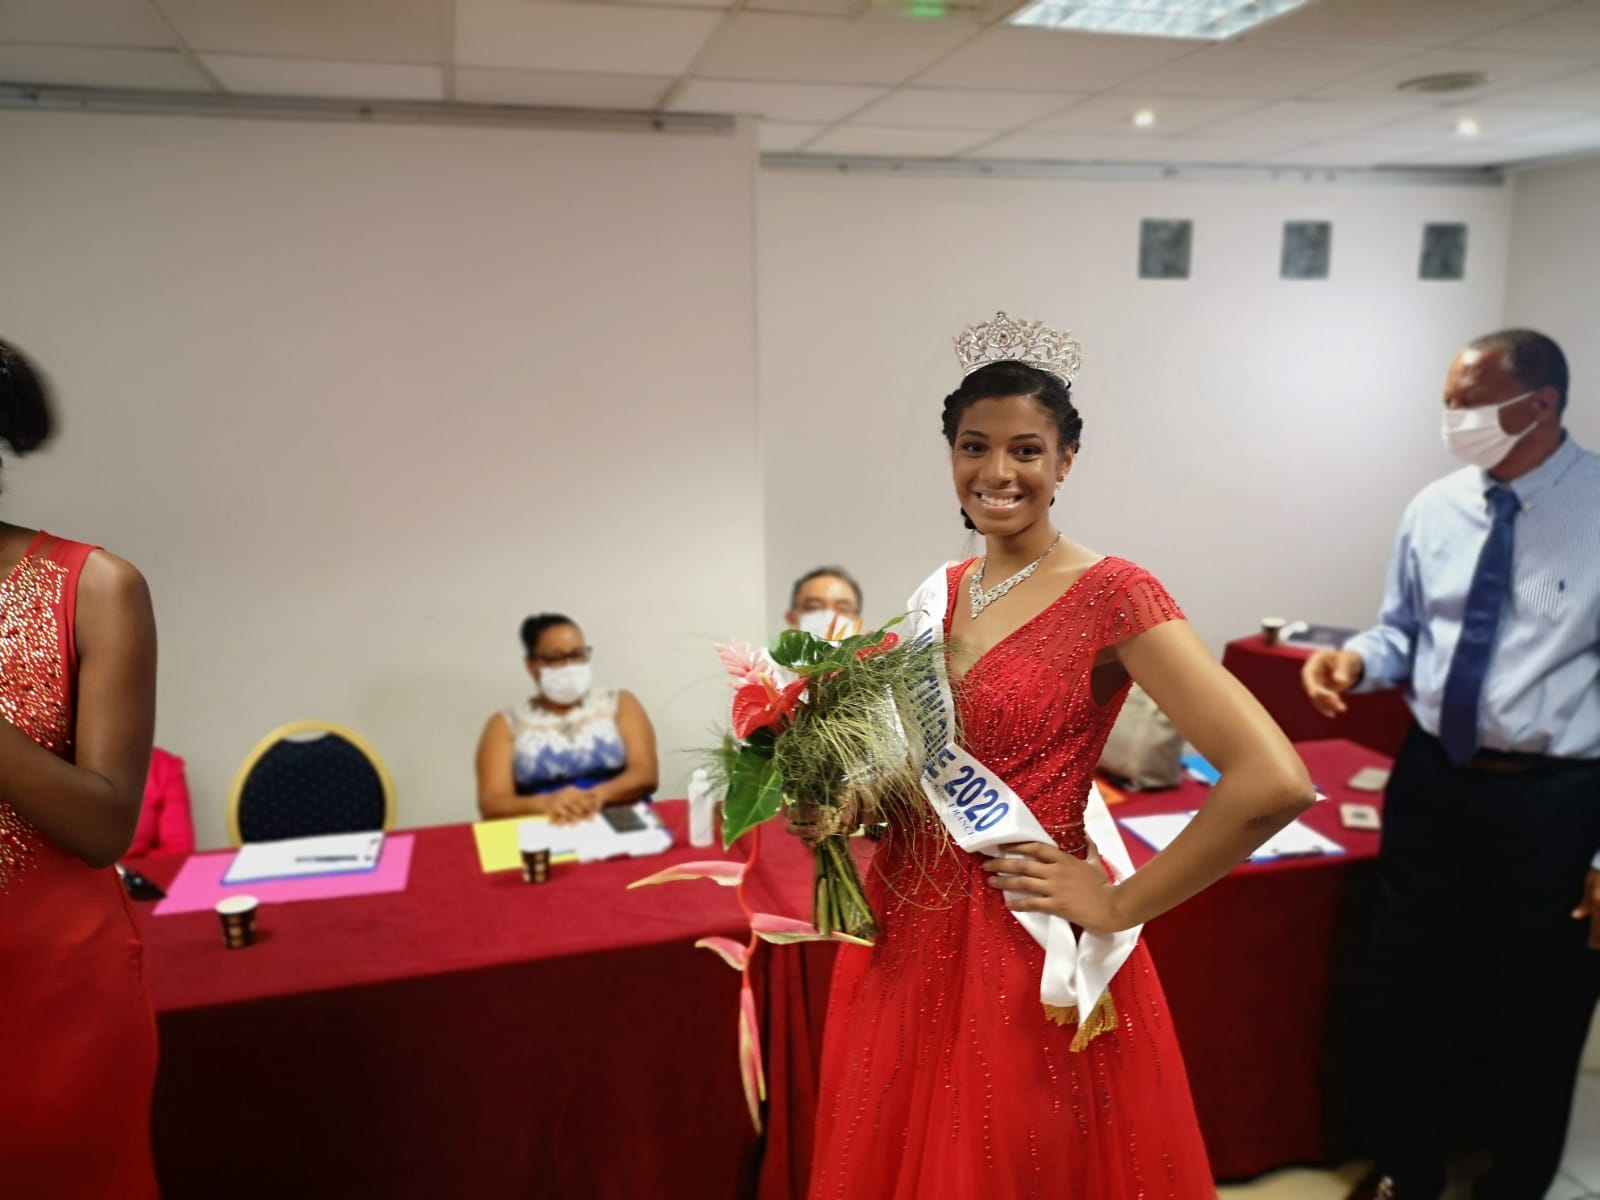     Qui est Séphorah Azur, la miss Martinique 2020 ?

